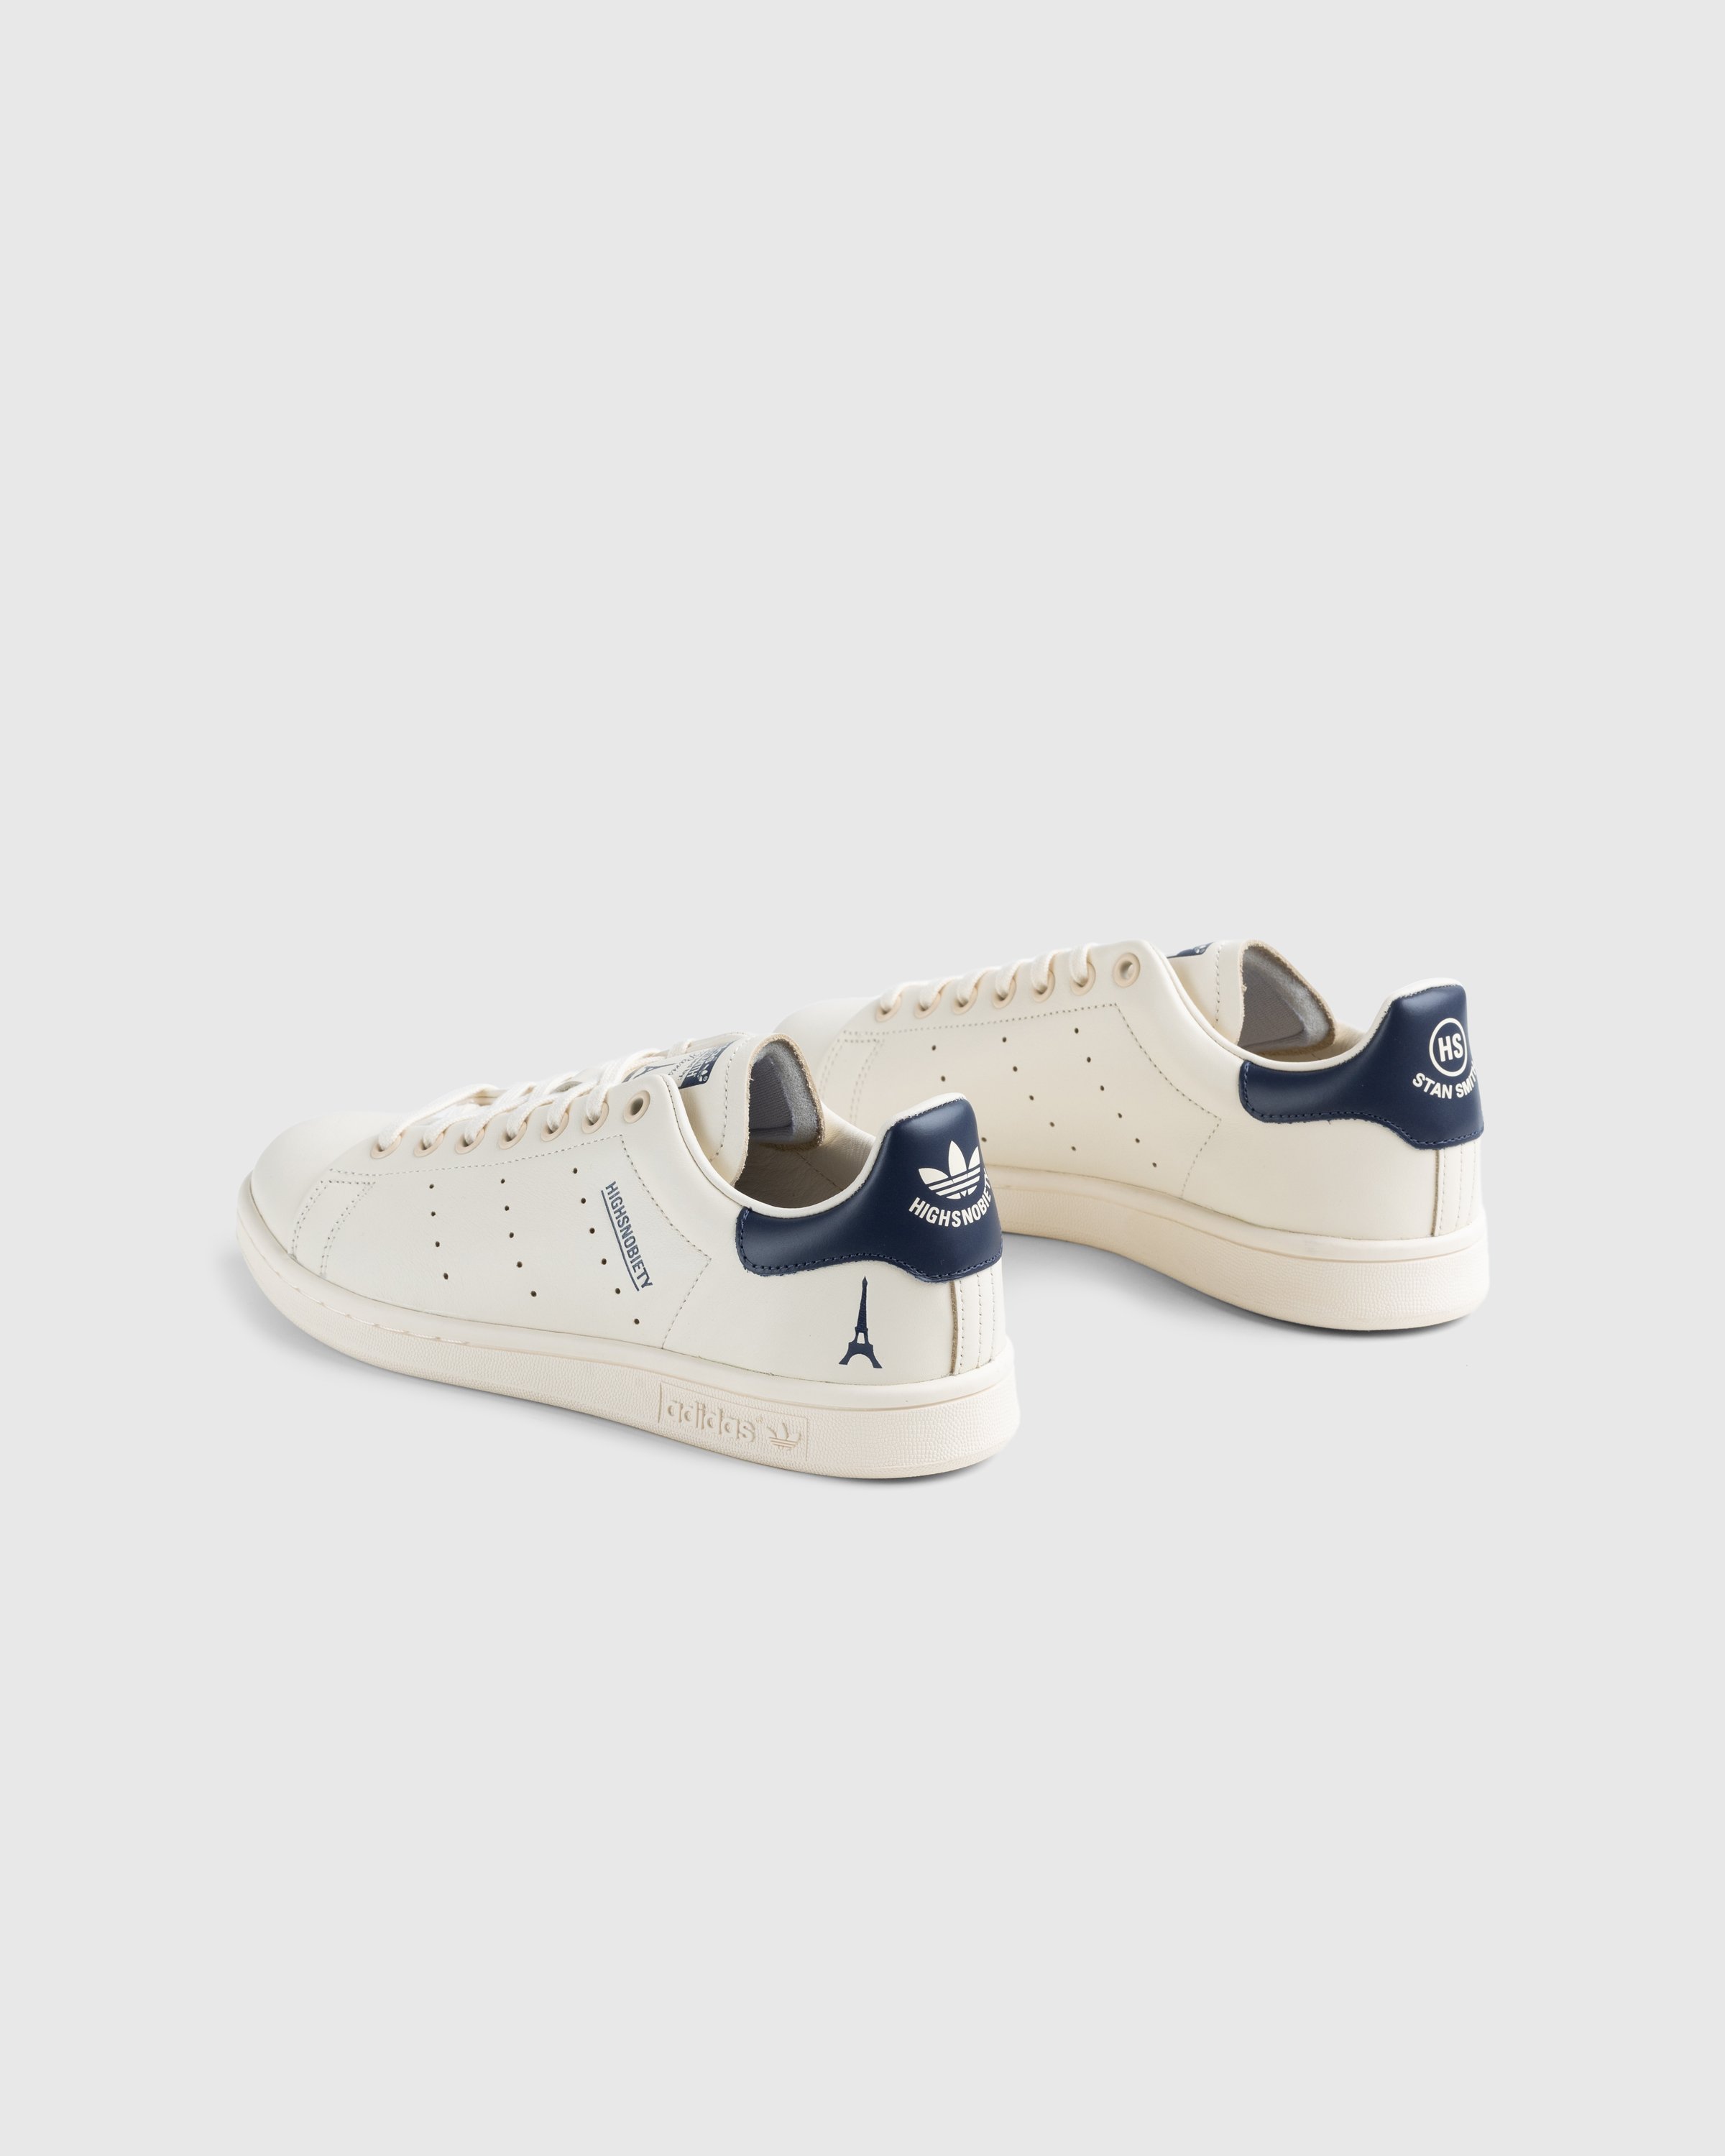 Adidas x Highsnobiety - Not In Paris Stan Smith Cream/Blue - Footwear - Beige - Image 4